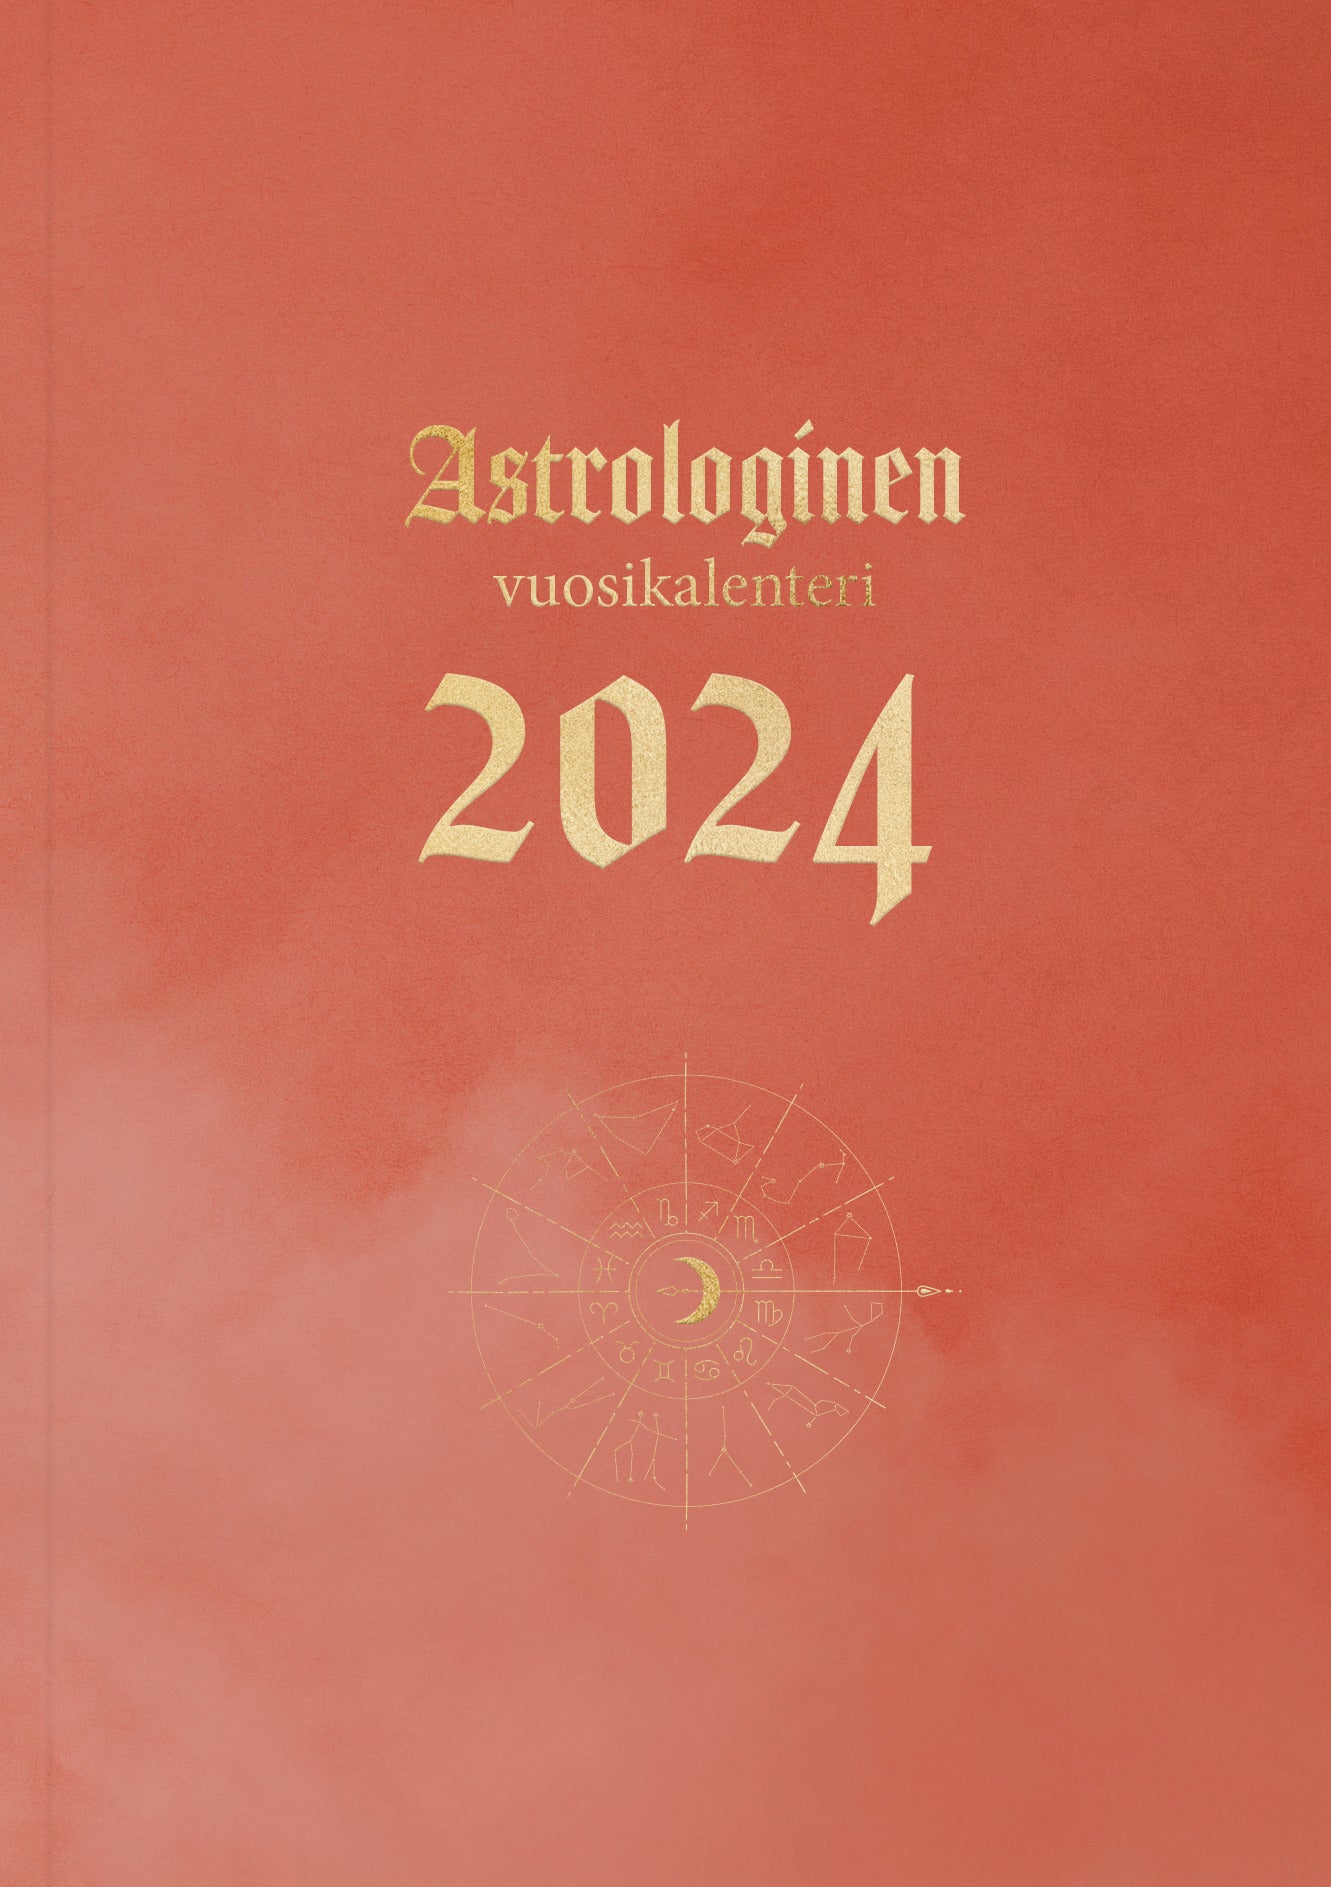 Astrologinen vuosikalenteri 2024 – Veera Laine – Kirja-verkkokauppa